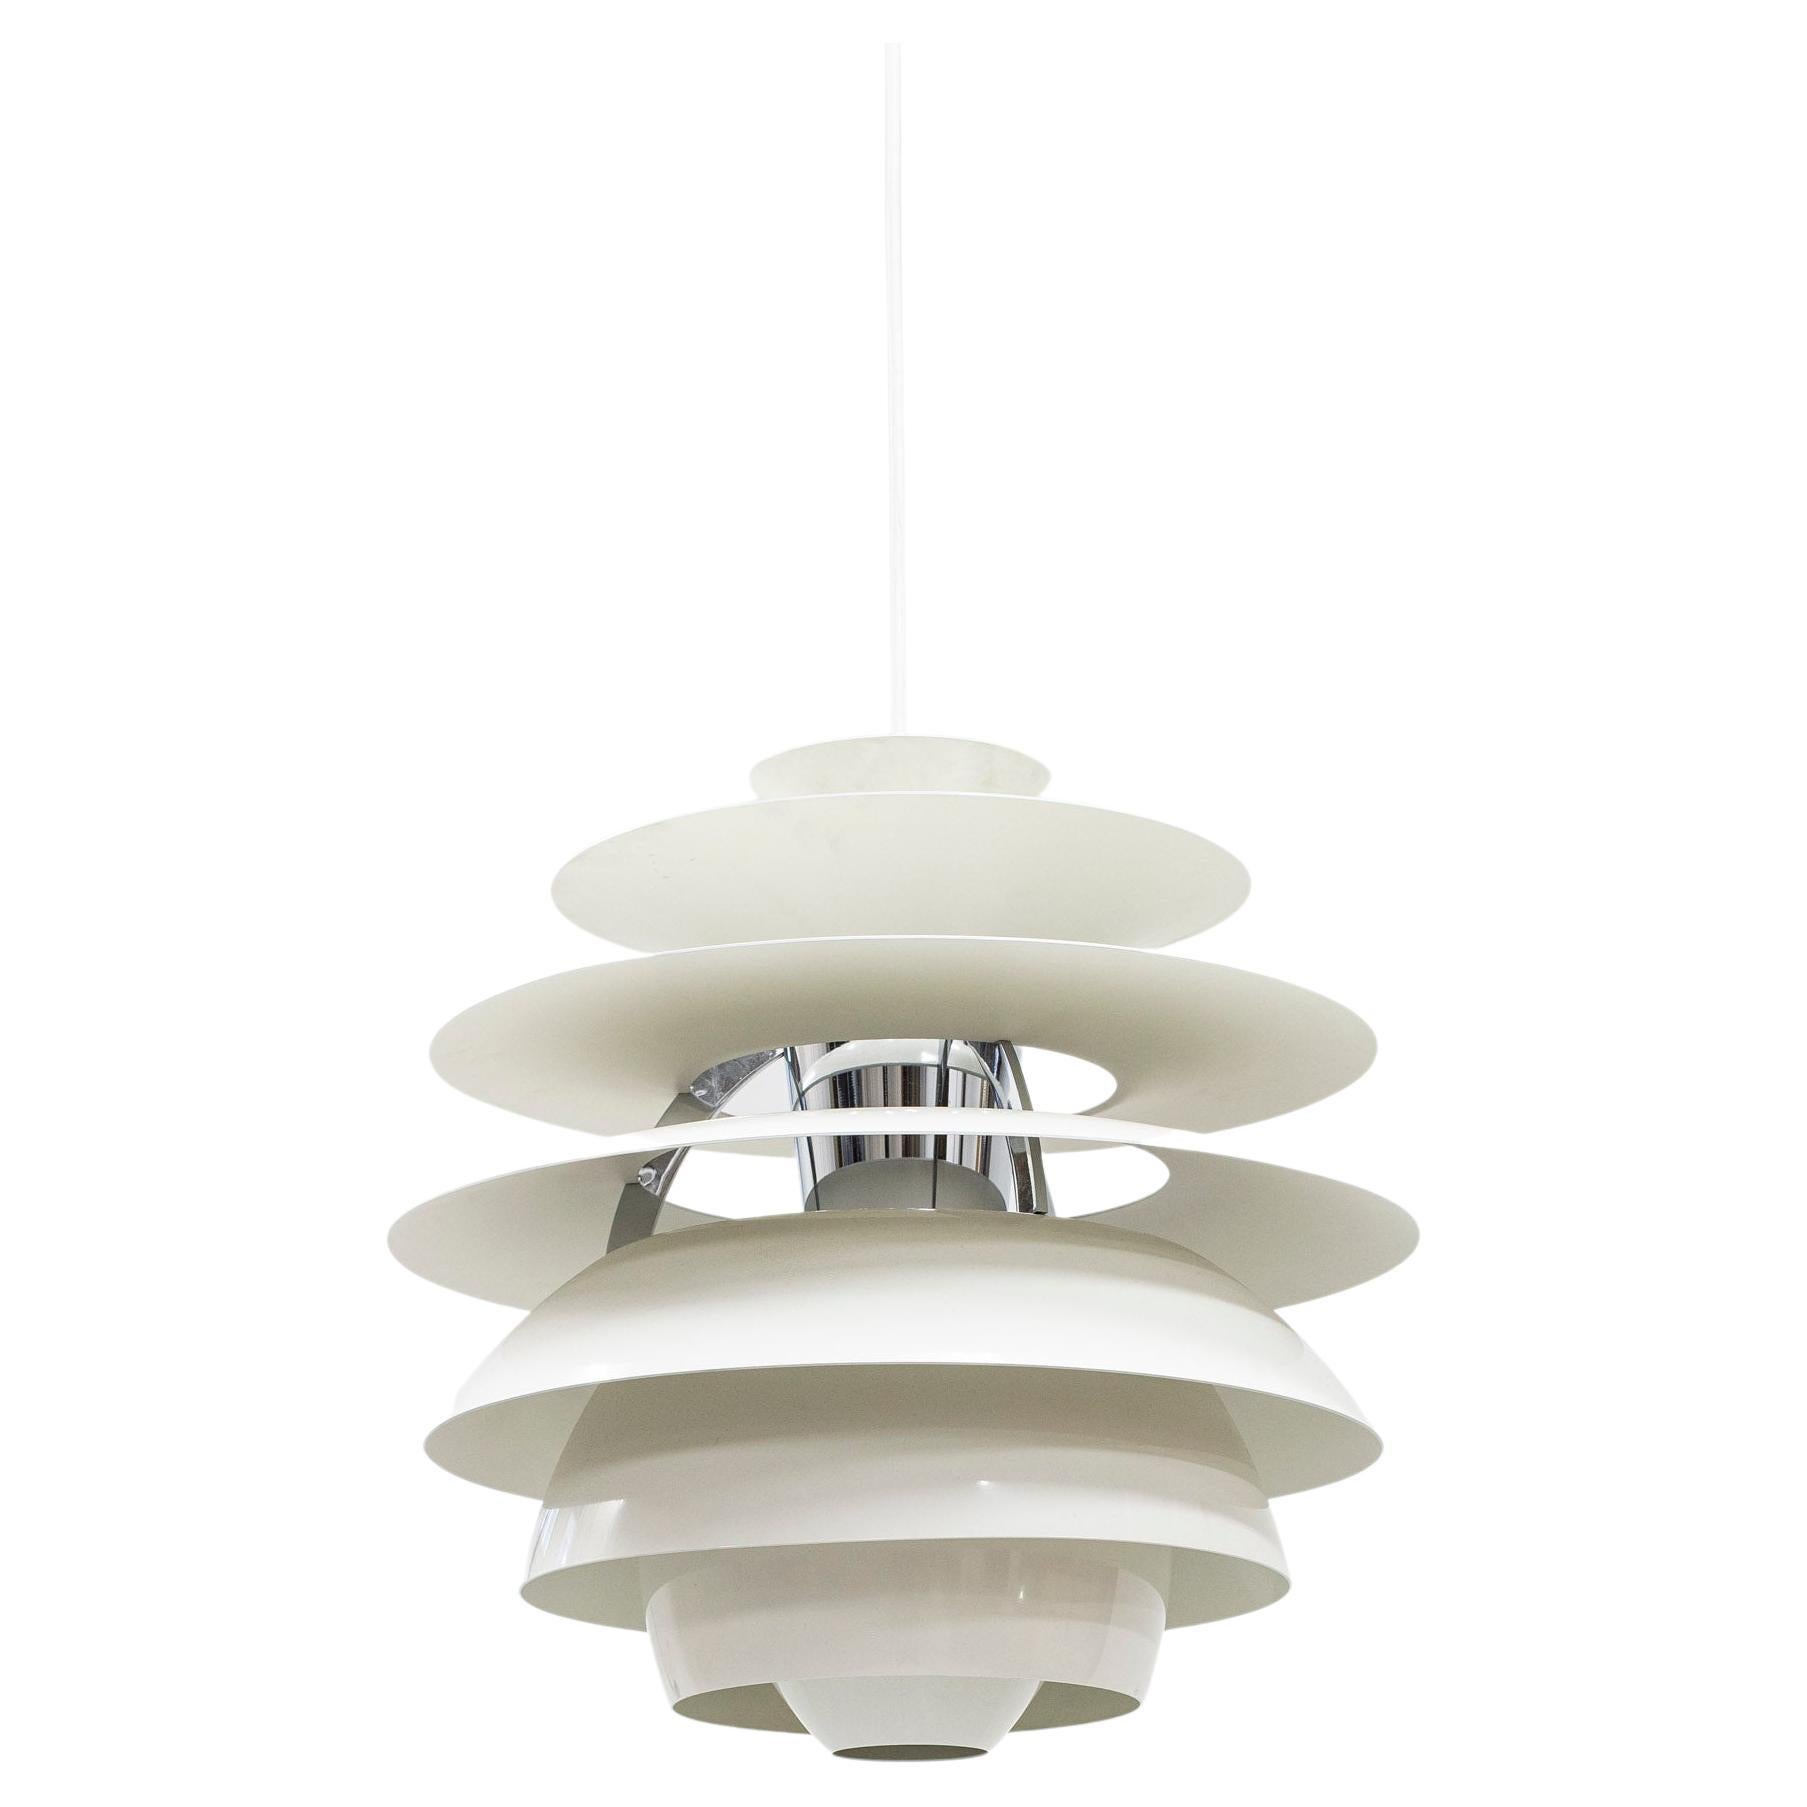 Pendant Light "Ph Snowball" Designed by Poul Henningsen, Louis Poulsen, Denmark For Sale